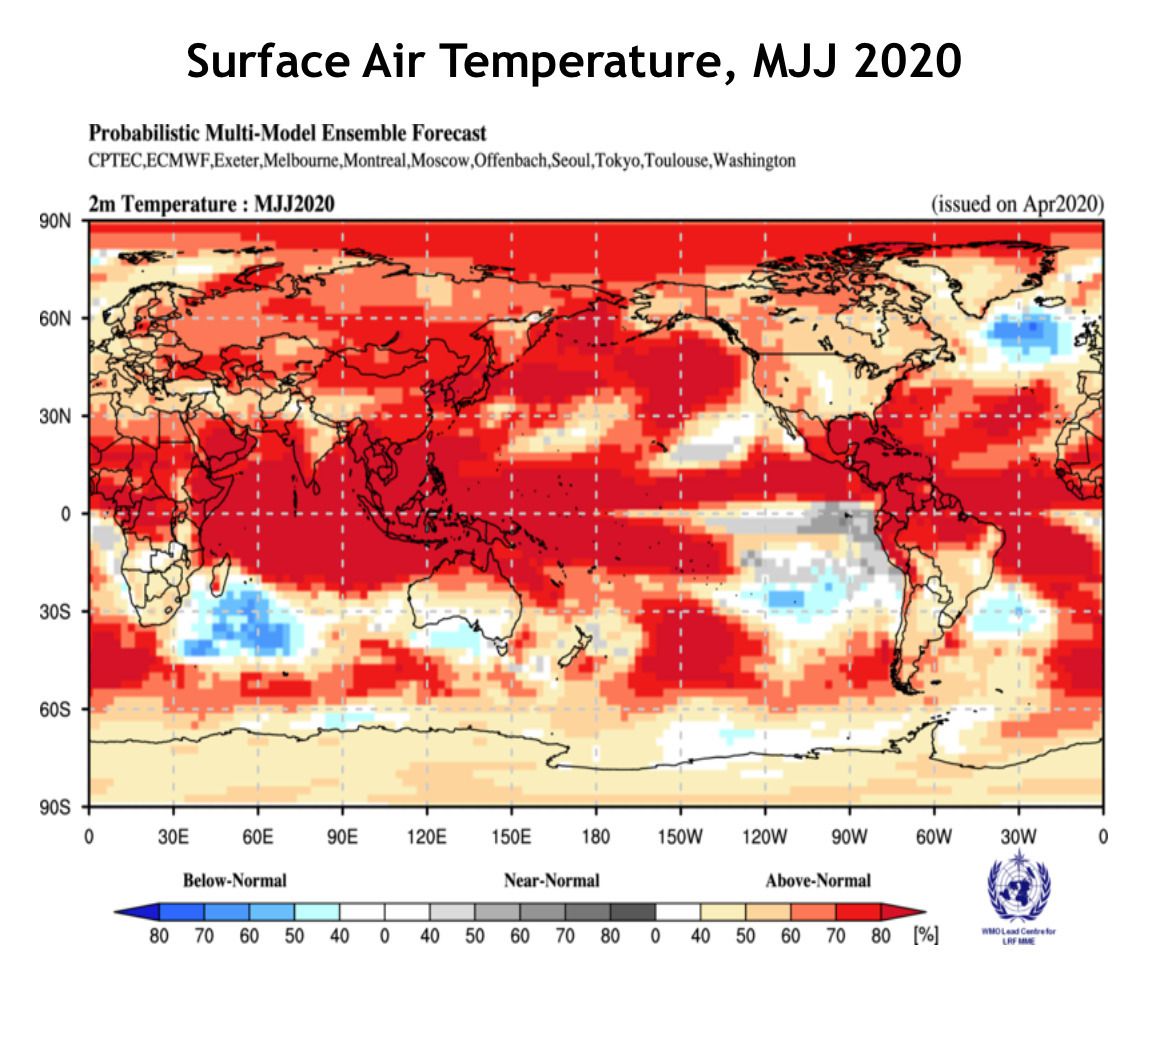 Літо 2020 року буде аномально теплим — метеорологи обіцяють всій планеті аномальне літо з спекою та опадами. Улітку 2020 року на Землі очікуються аномально висока температура поверхні океану в тропічних широтах, а також дефіцит опадів на території Південної Америки.